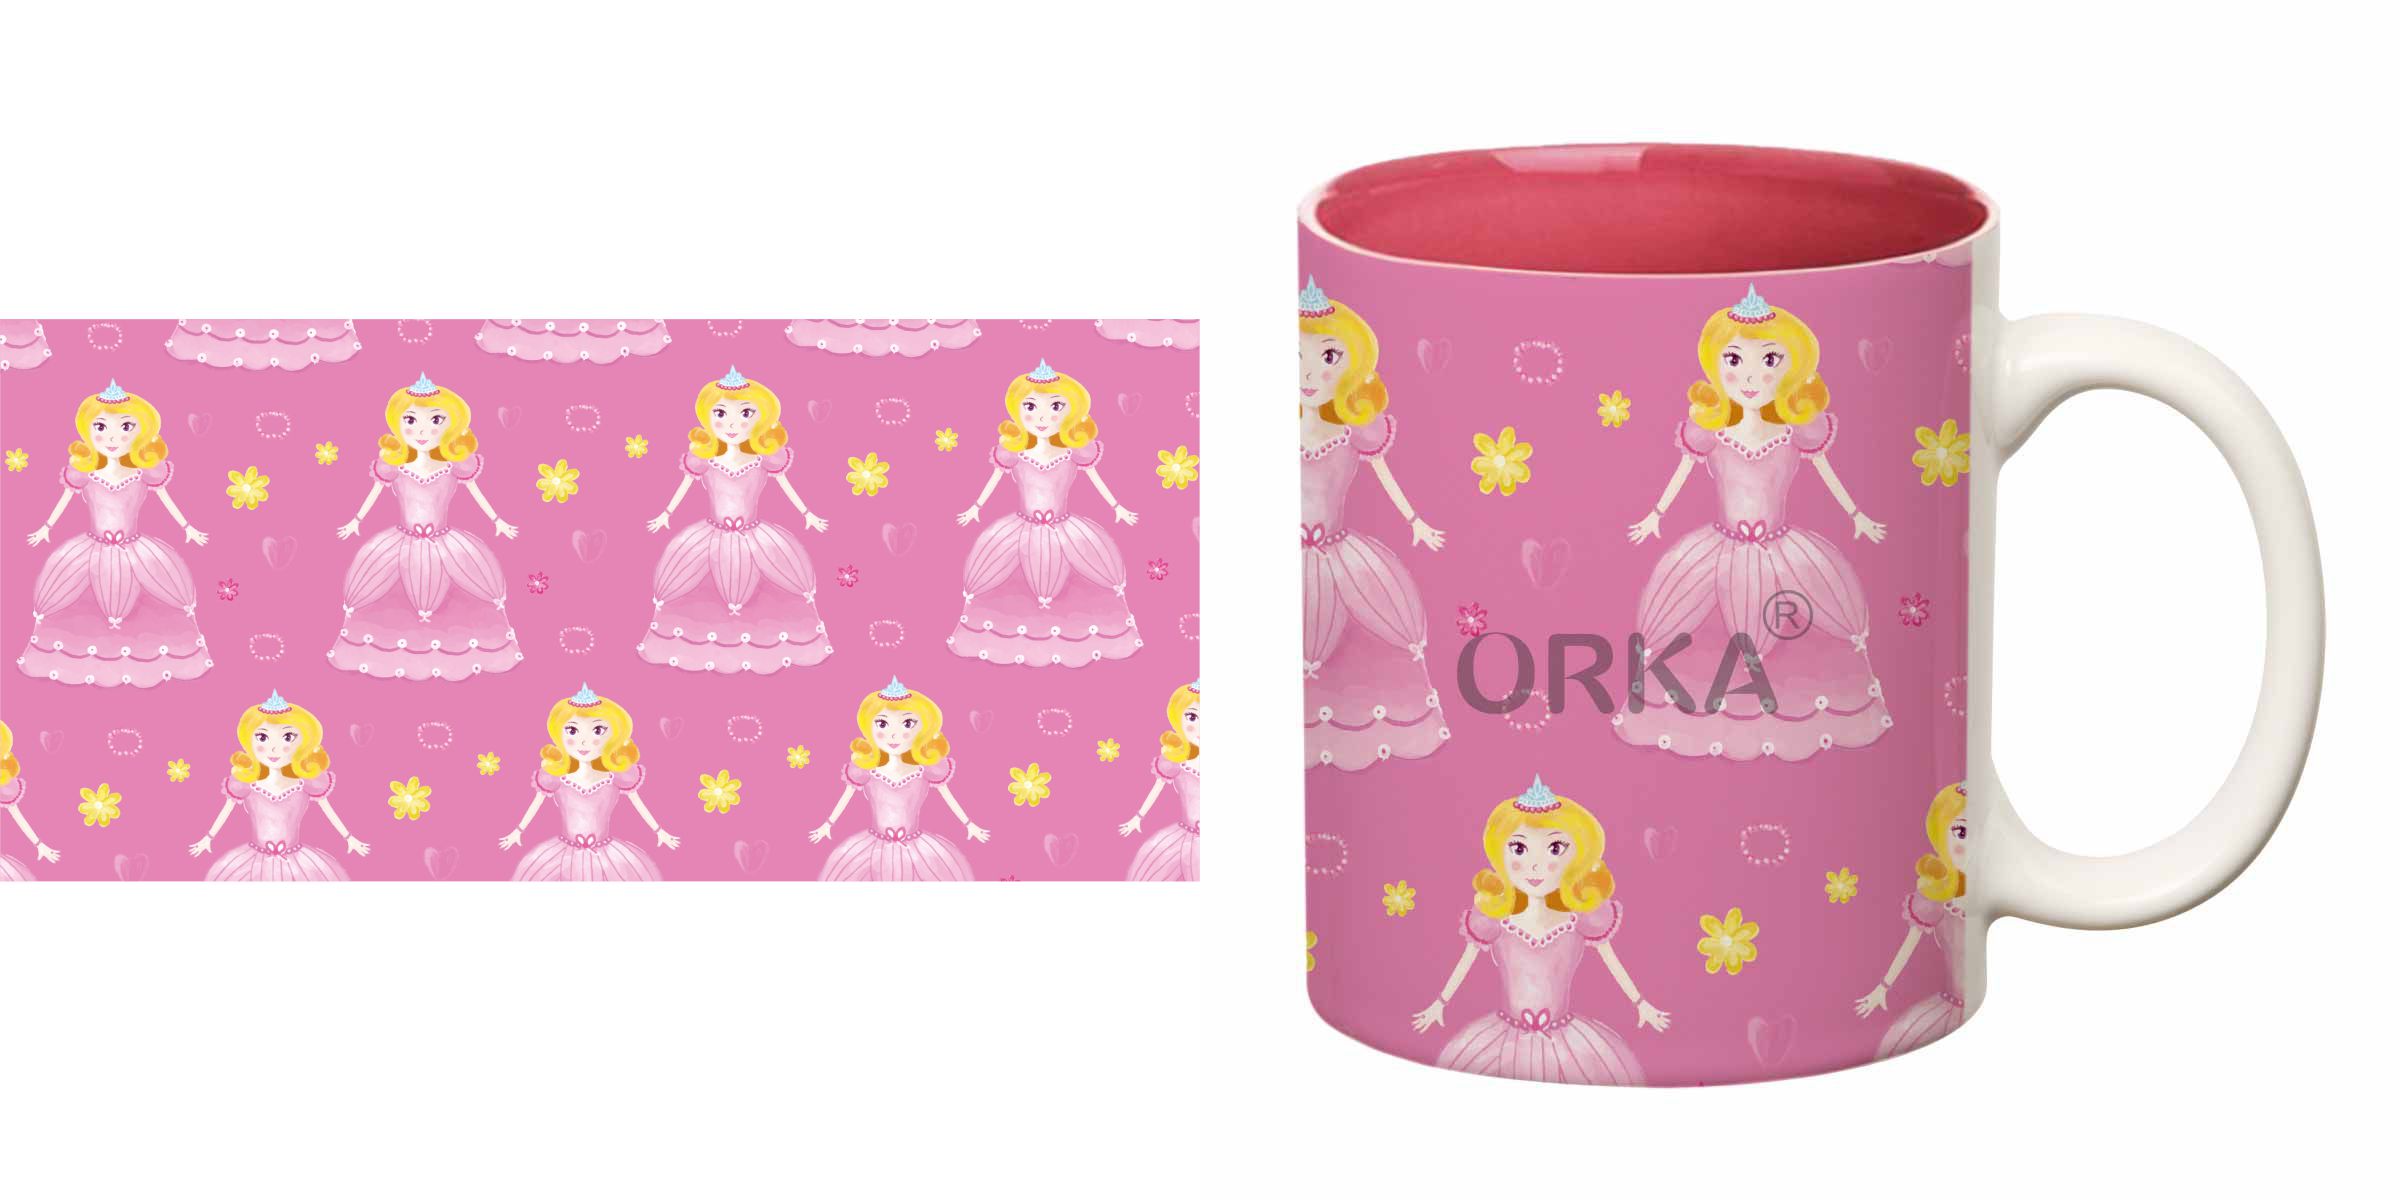 ORKA Coffee Mug Princess Theme 11 Oz 2  